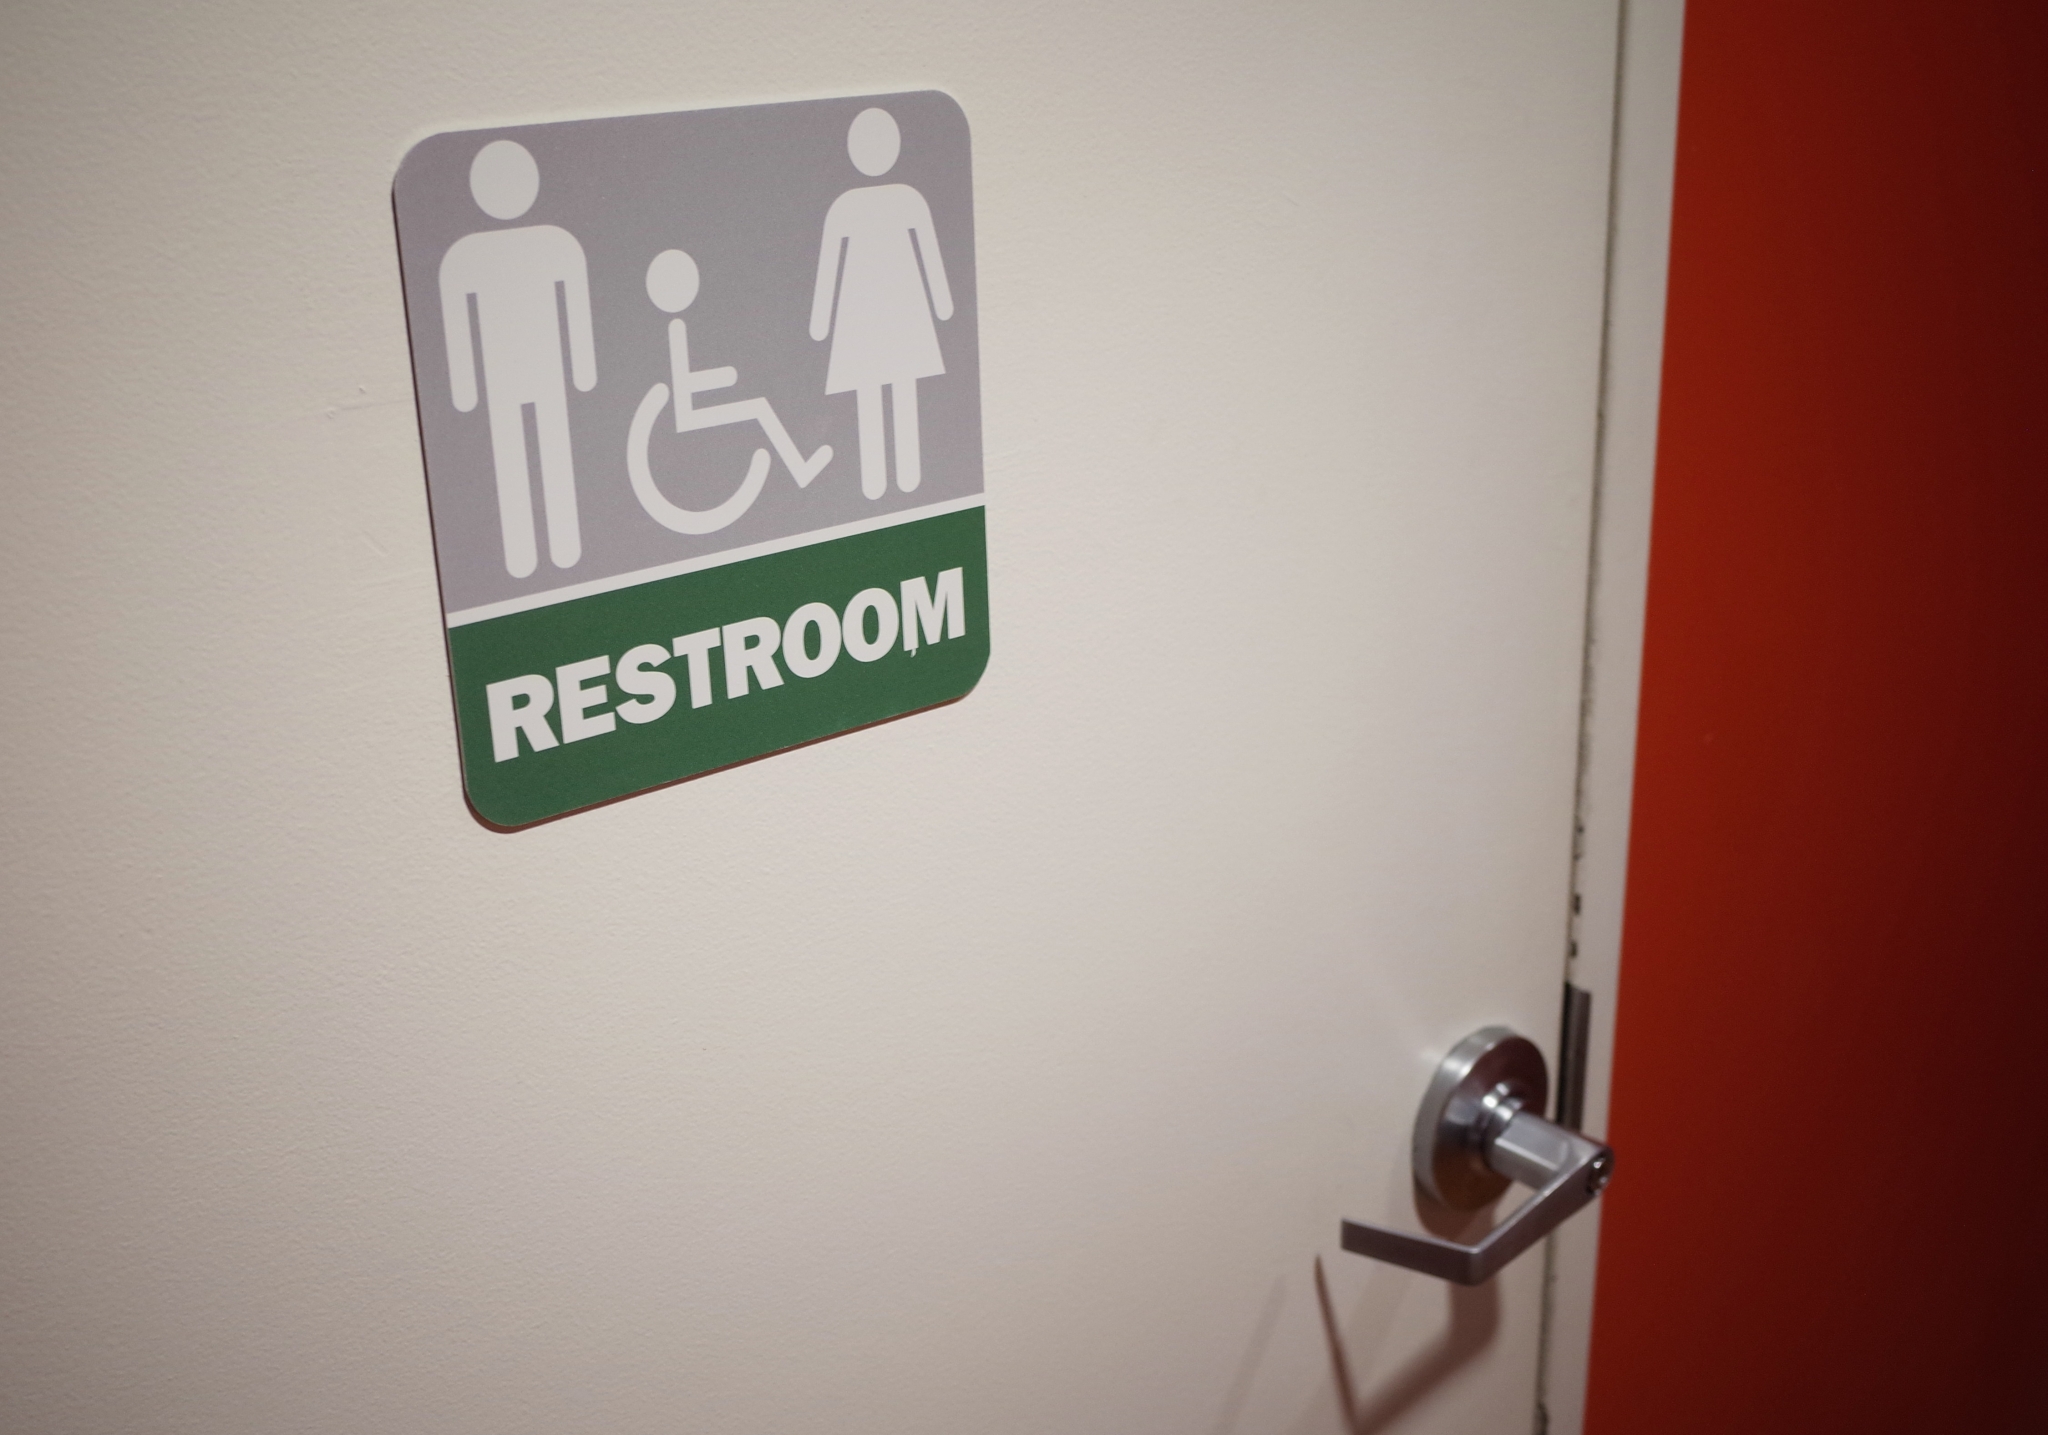 San Jose public schools follow lead in opening gender neutral restrooms